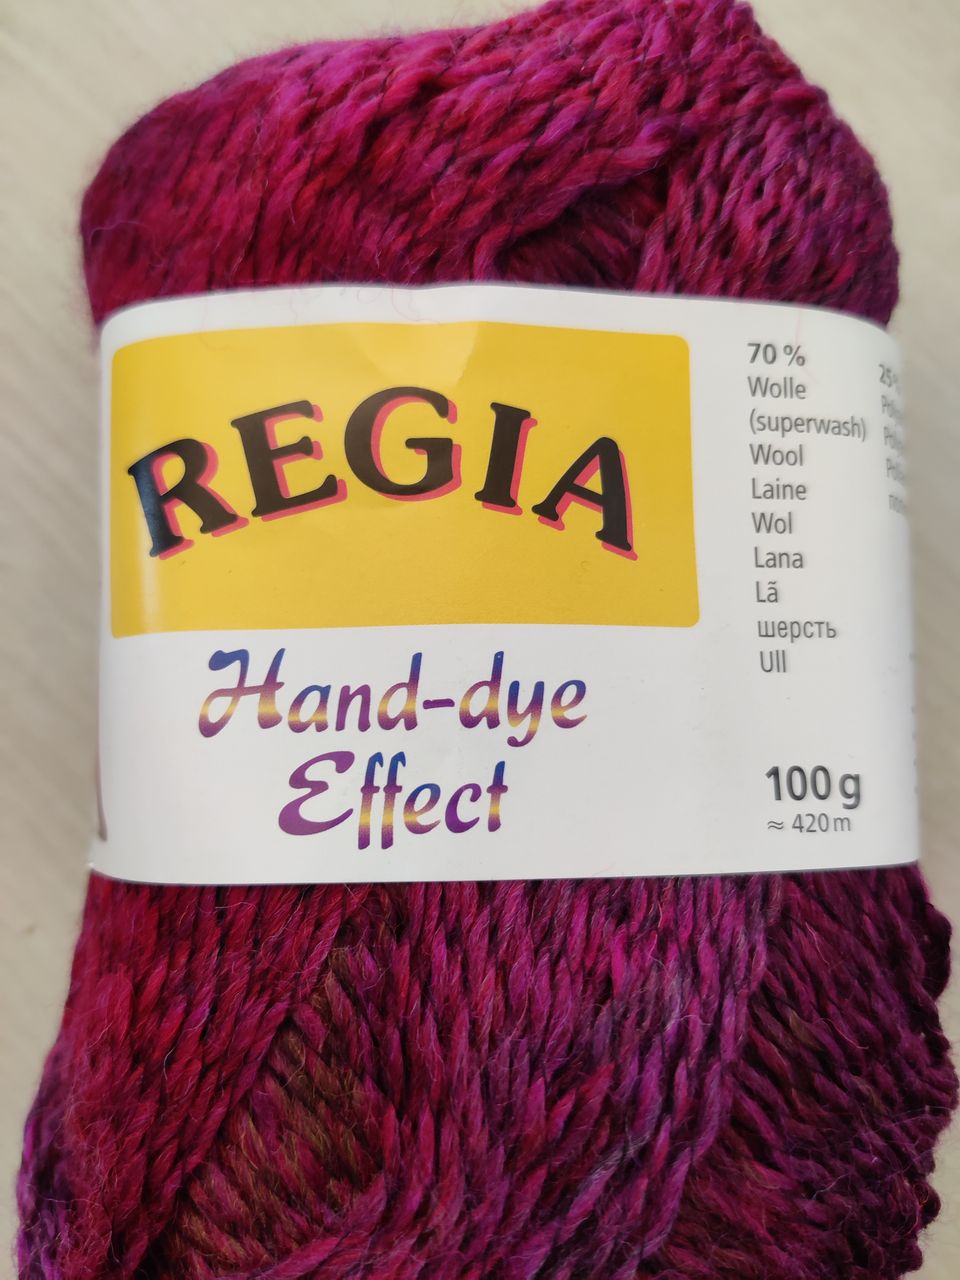 Regia hand-dye effect lankaa